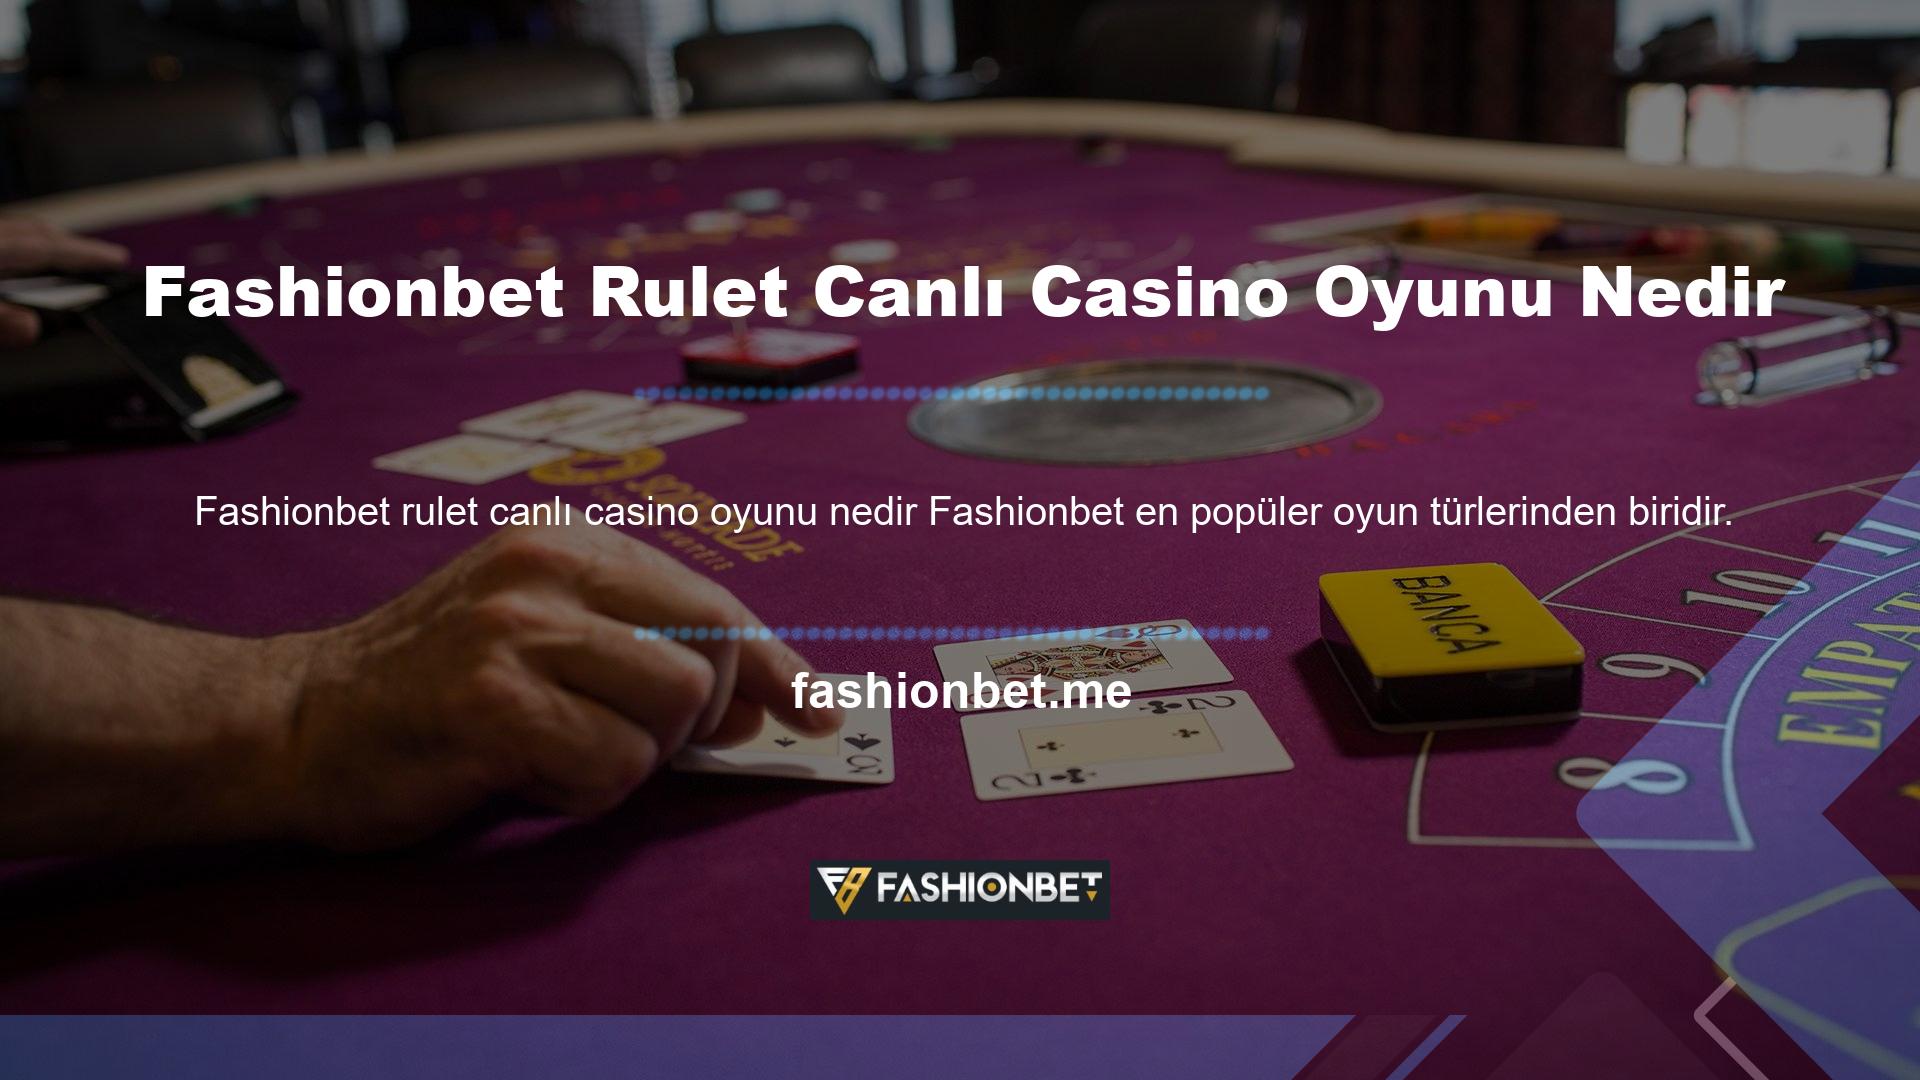 Fashionbet Anında Rulet Canlı Casino Oyunu Nedir? Anında Rulet oyunları, oyunların hızlı olması ve oynanışının basit ve modern oyuncular için bile ustalaşması kolay olması nedeniyle hızlı bir şekilde büyük para kazanmak isteyenlerin tercihidir